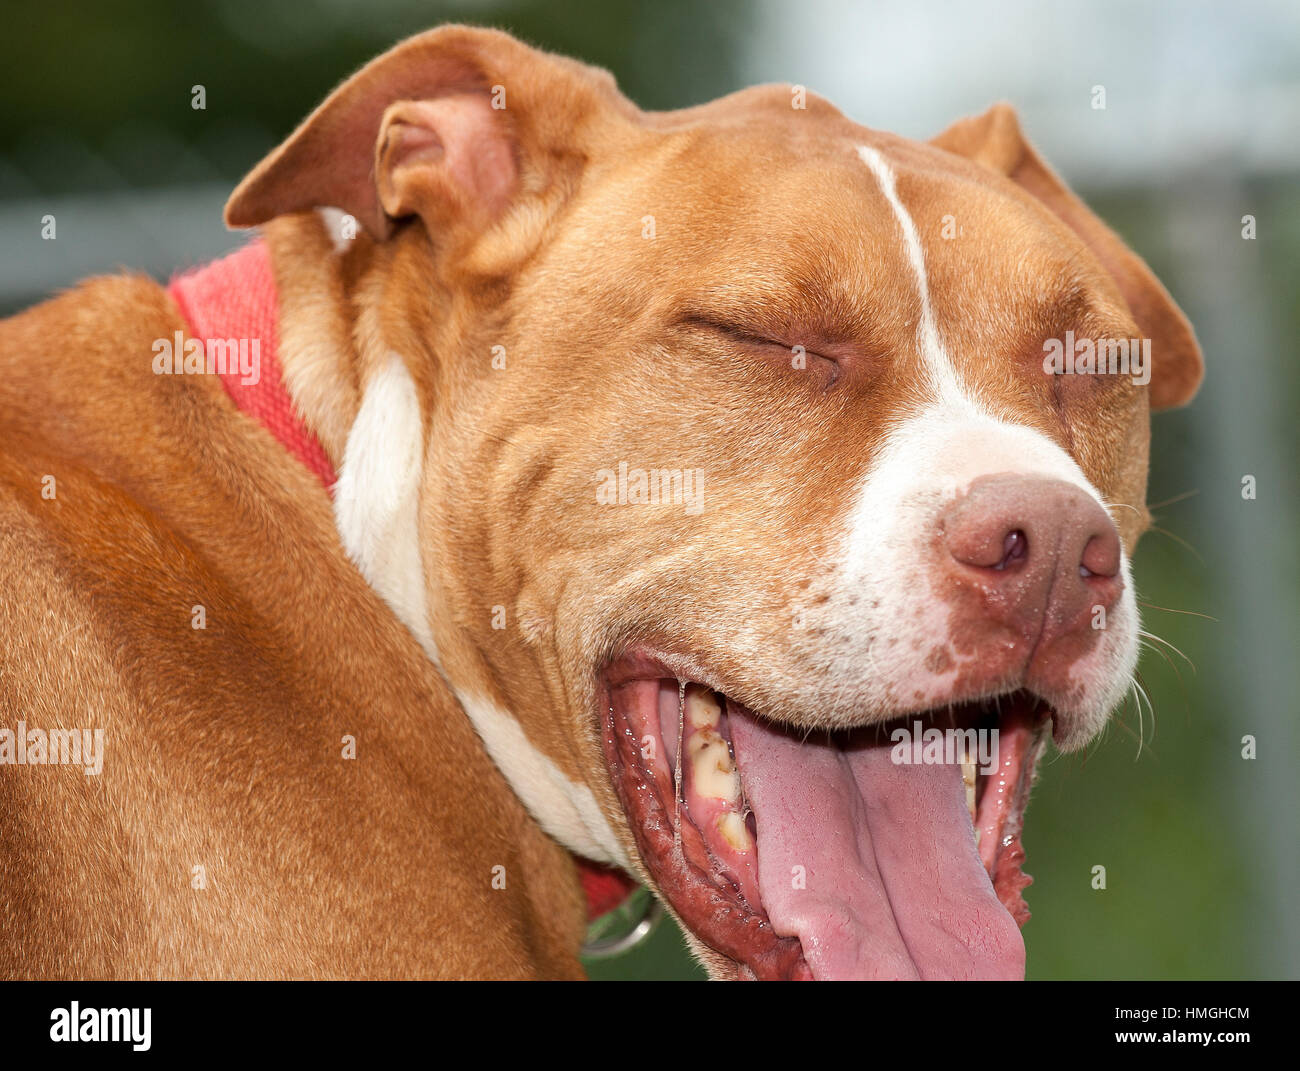 113 brun et blanc abri de sauvetage chien faire drôle de visage avec les yeux fermés et la bouche ouverte Banque D'Images